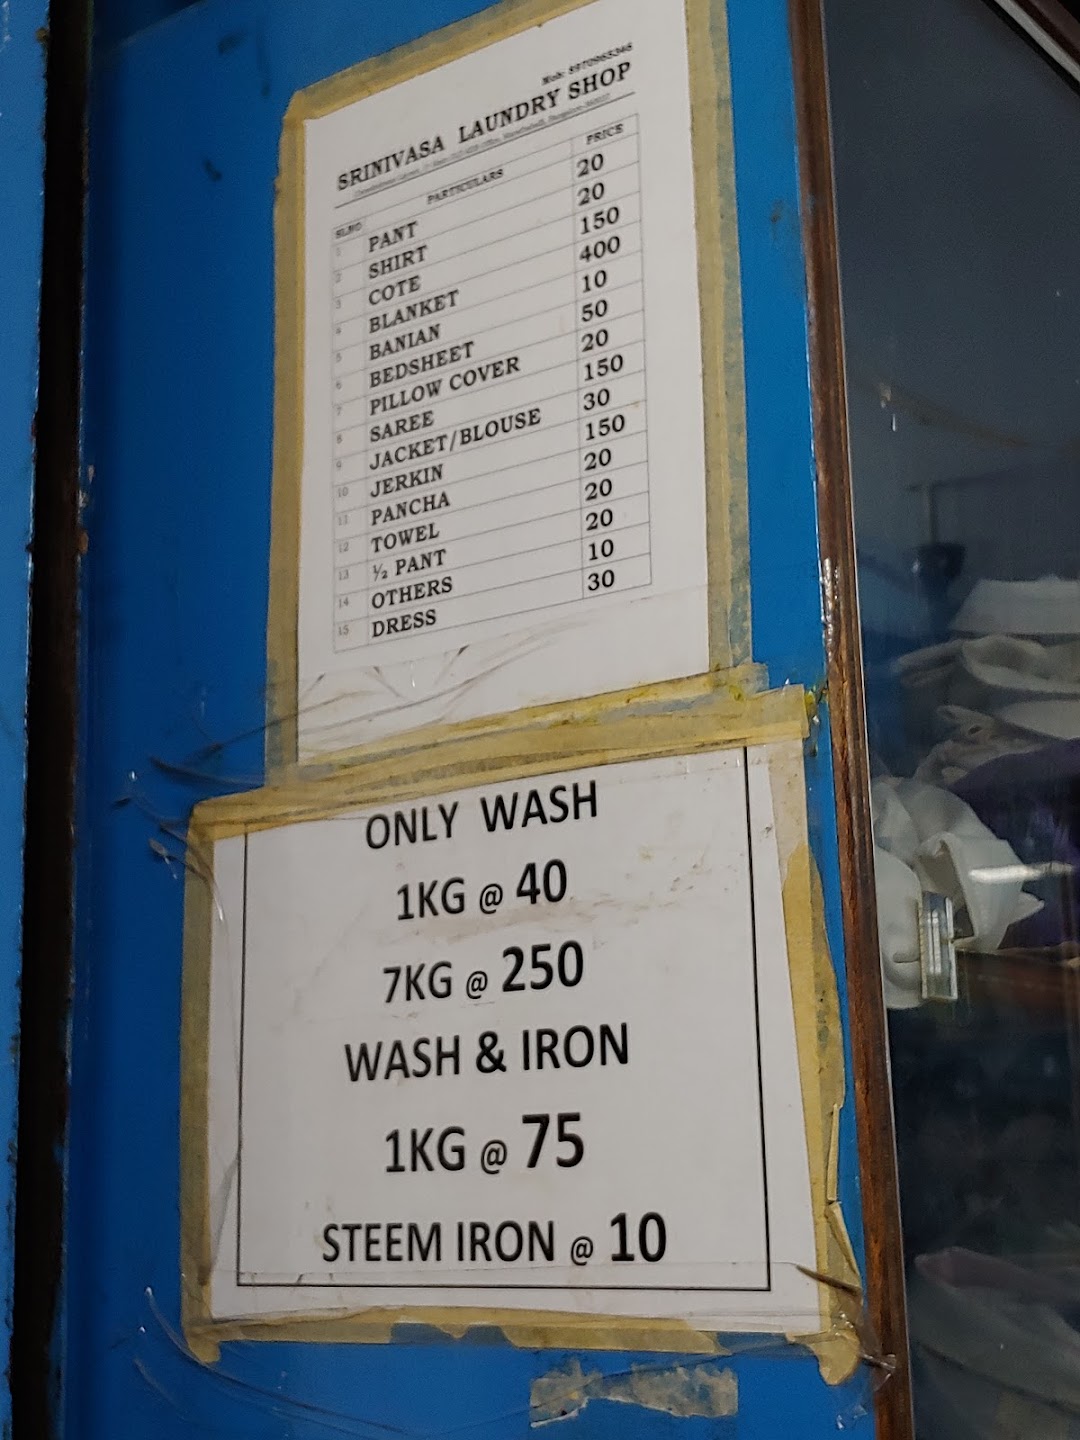 Srinivasa DryWash And Laundry